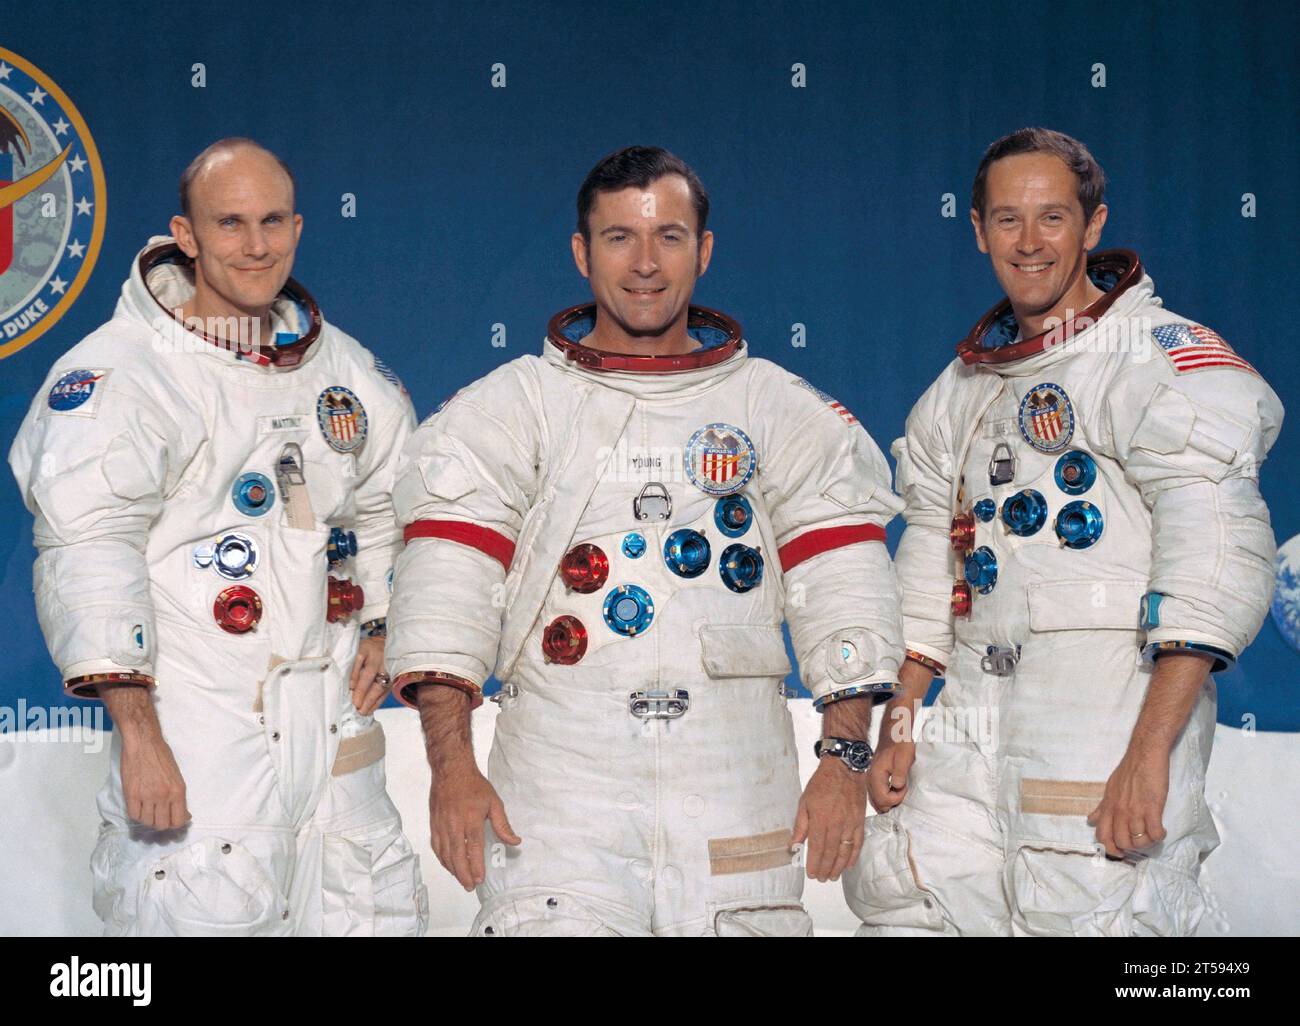 Usa. November 2023. Apollo-Astronaut Thomas Kenneth Mattingly II, bekannt dafür, dass er der Besatzung von Apollo 13 nach einer Explosion, die ihre Mondmission zum Scheitern brachte, geholfen hat, sicher zur Erde zurückzukehren, ist im Alter von acht Jahren gestorben. DATEIFOTO AUFGENOMMEN AM: 12. Januar 1972, USA: Offizielles NASA-Porträt der Apollo 16 Mondlandungsmission Prime Crew (L-R) der amerikanischen Astronauten Ken Mattingly, John Young und Charlie Duke in Raumanzügen. (Kreditbild: © NASA/ZUMA Press Wire) NUR REDAKTIONELLE VERWENDUNG! Nicht für kommerzielle ZWECKE! Stockfoto